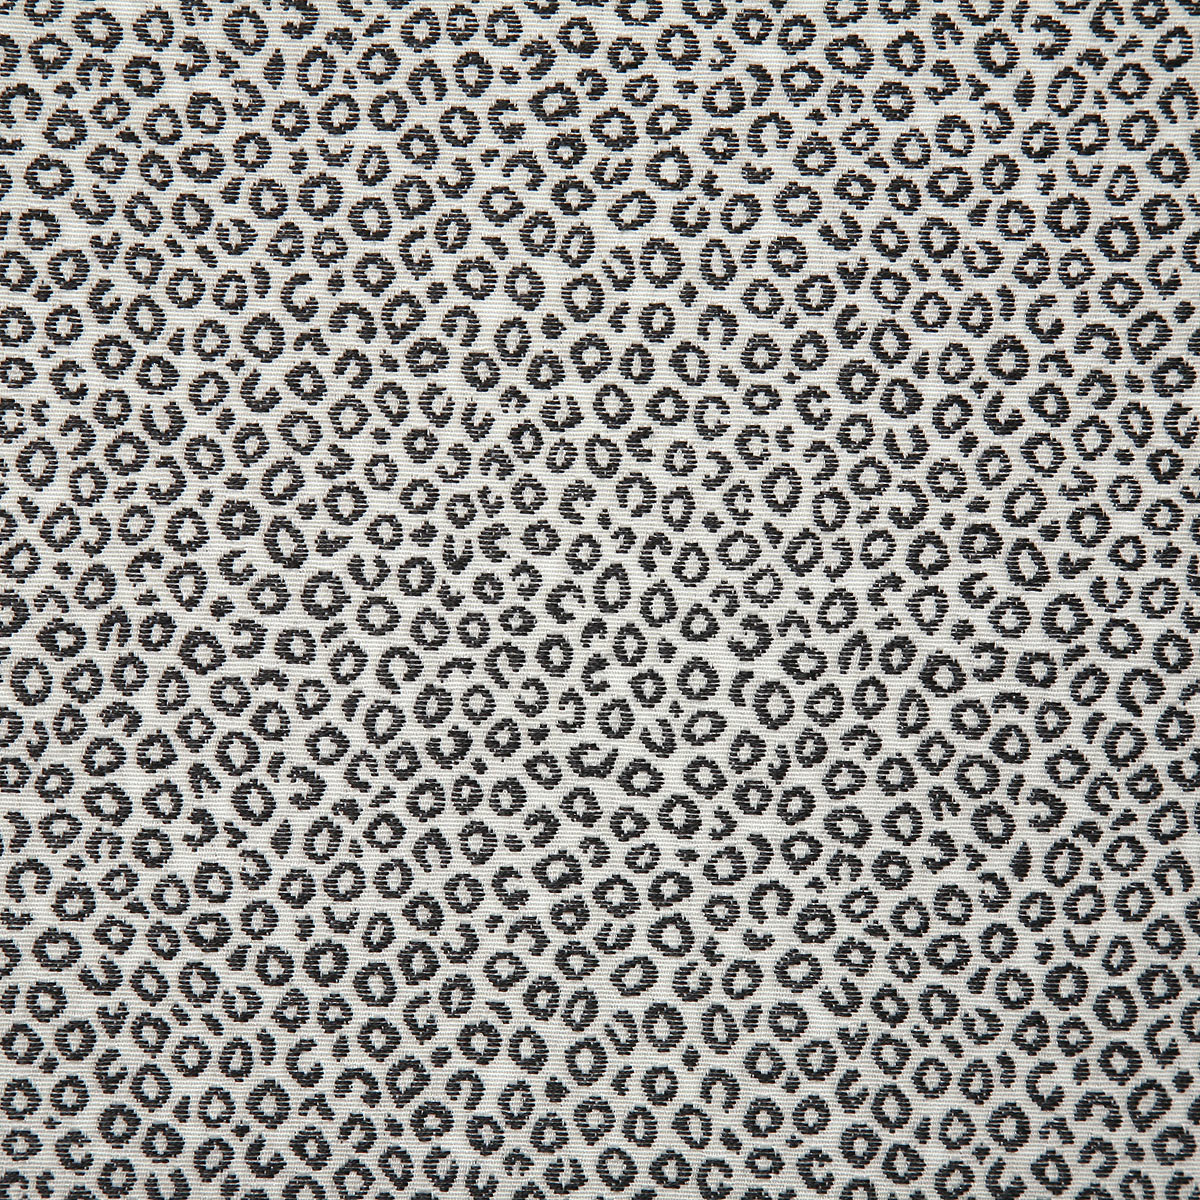 dark leopard pattern fabric swatch